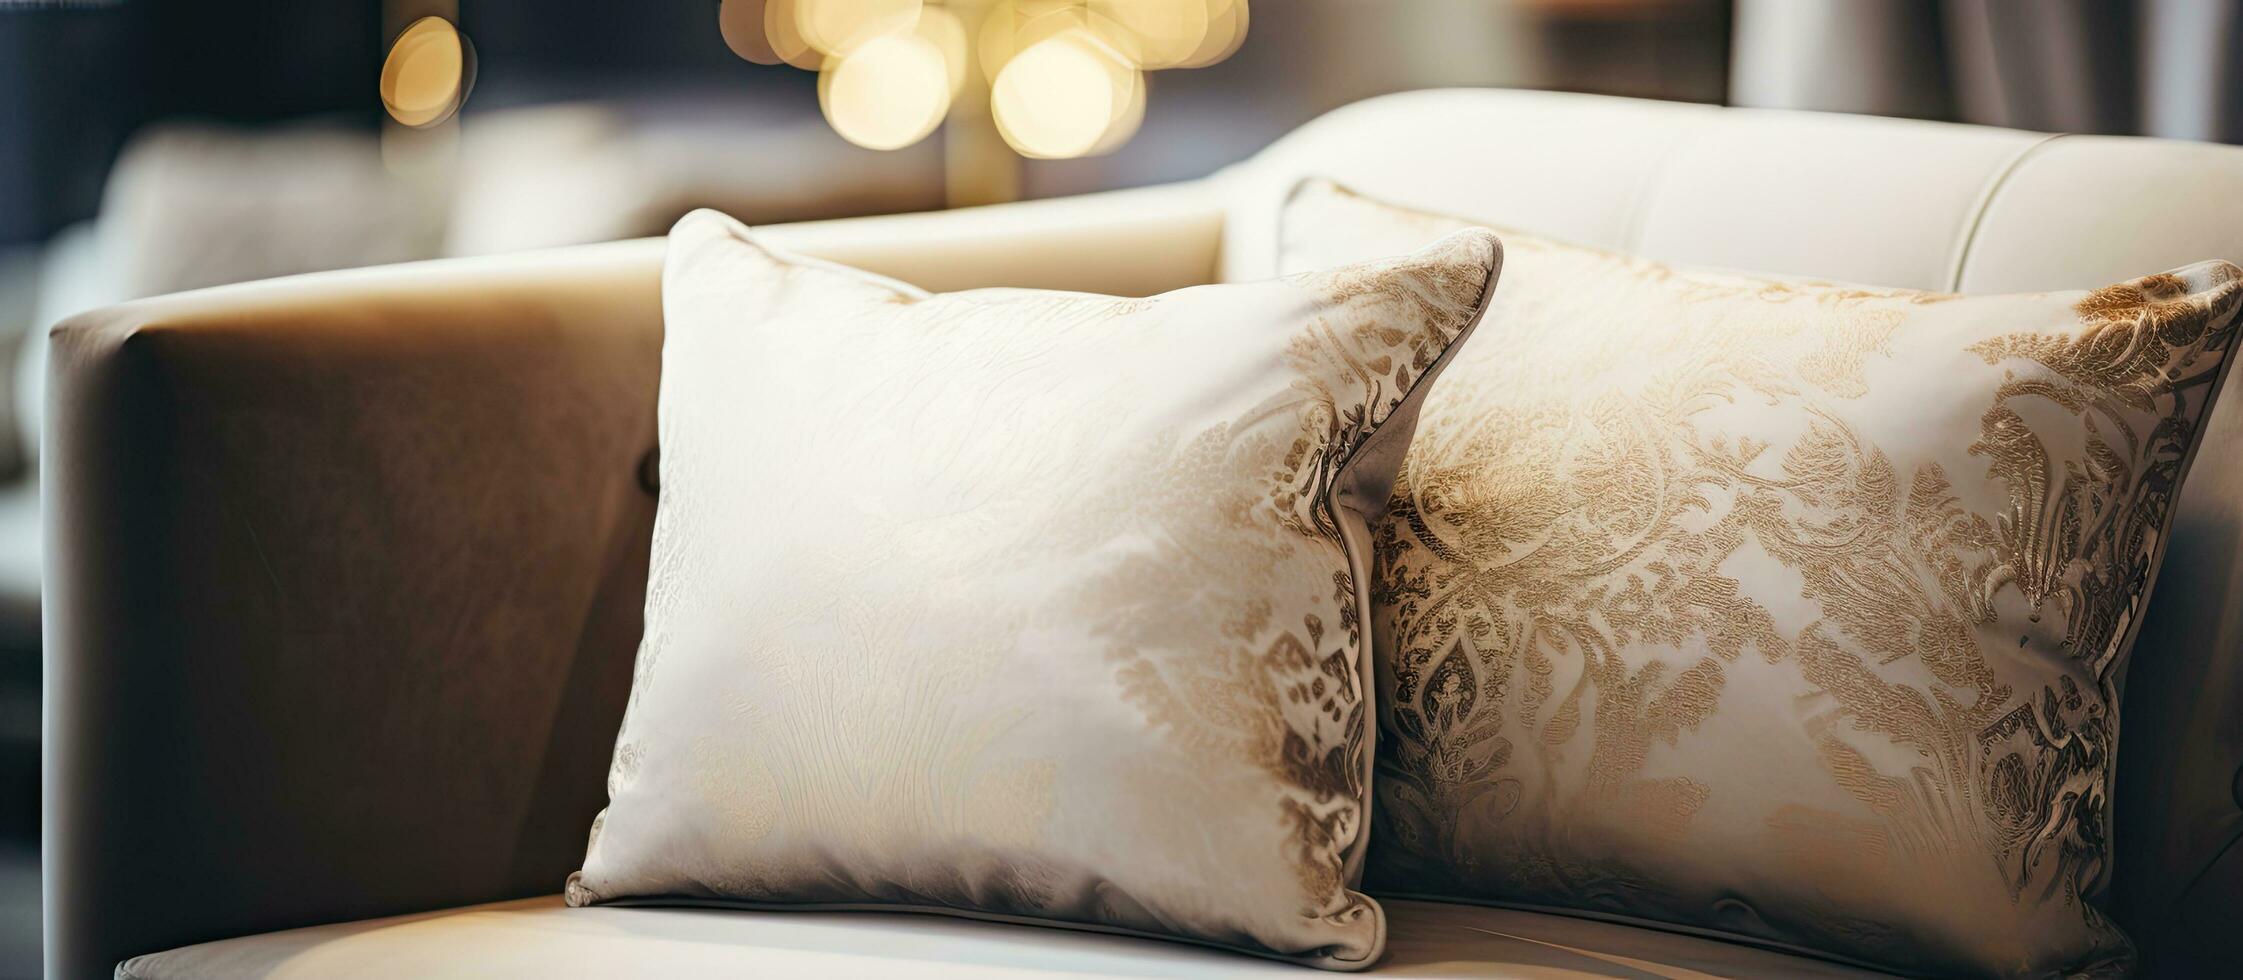 Clásico ligero filtrar mejora el estético de un lujoso almohada en un sofá en el vivo habitación interior foto